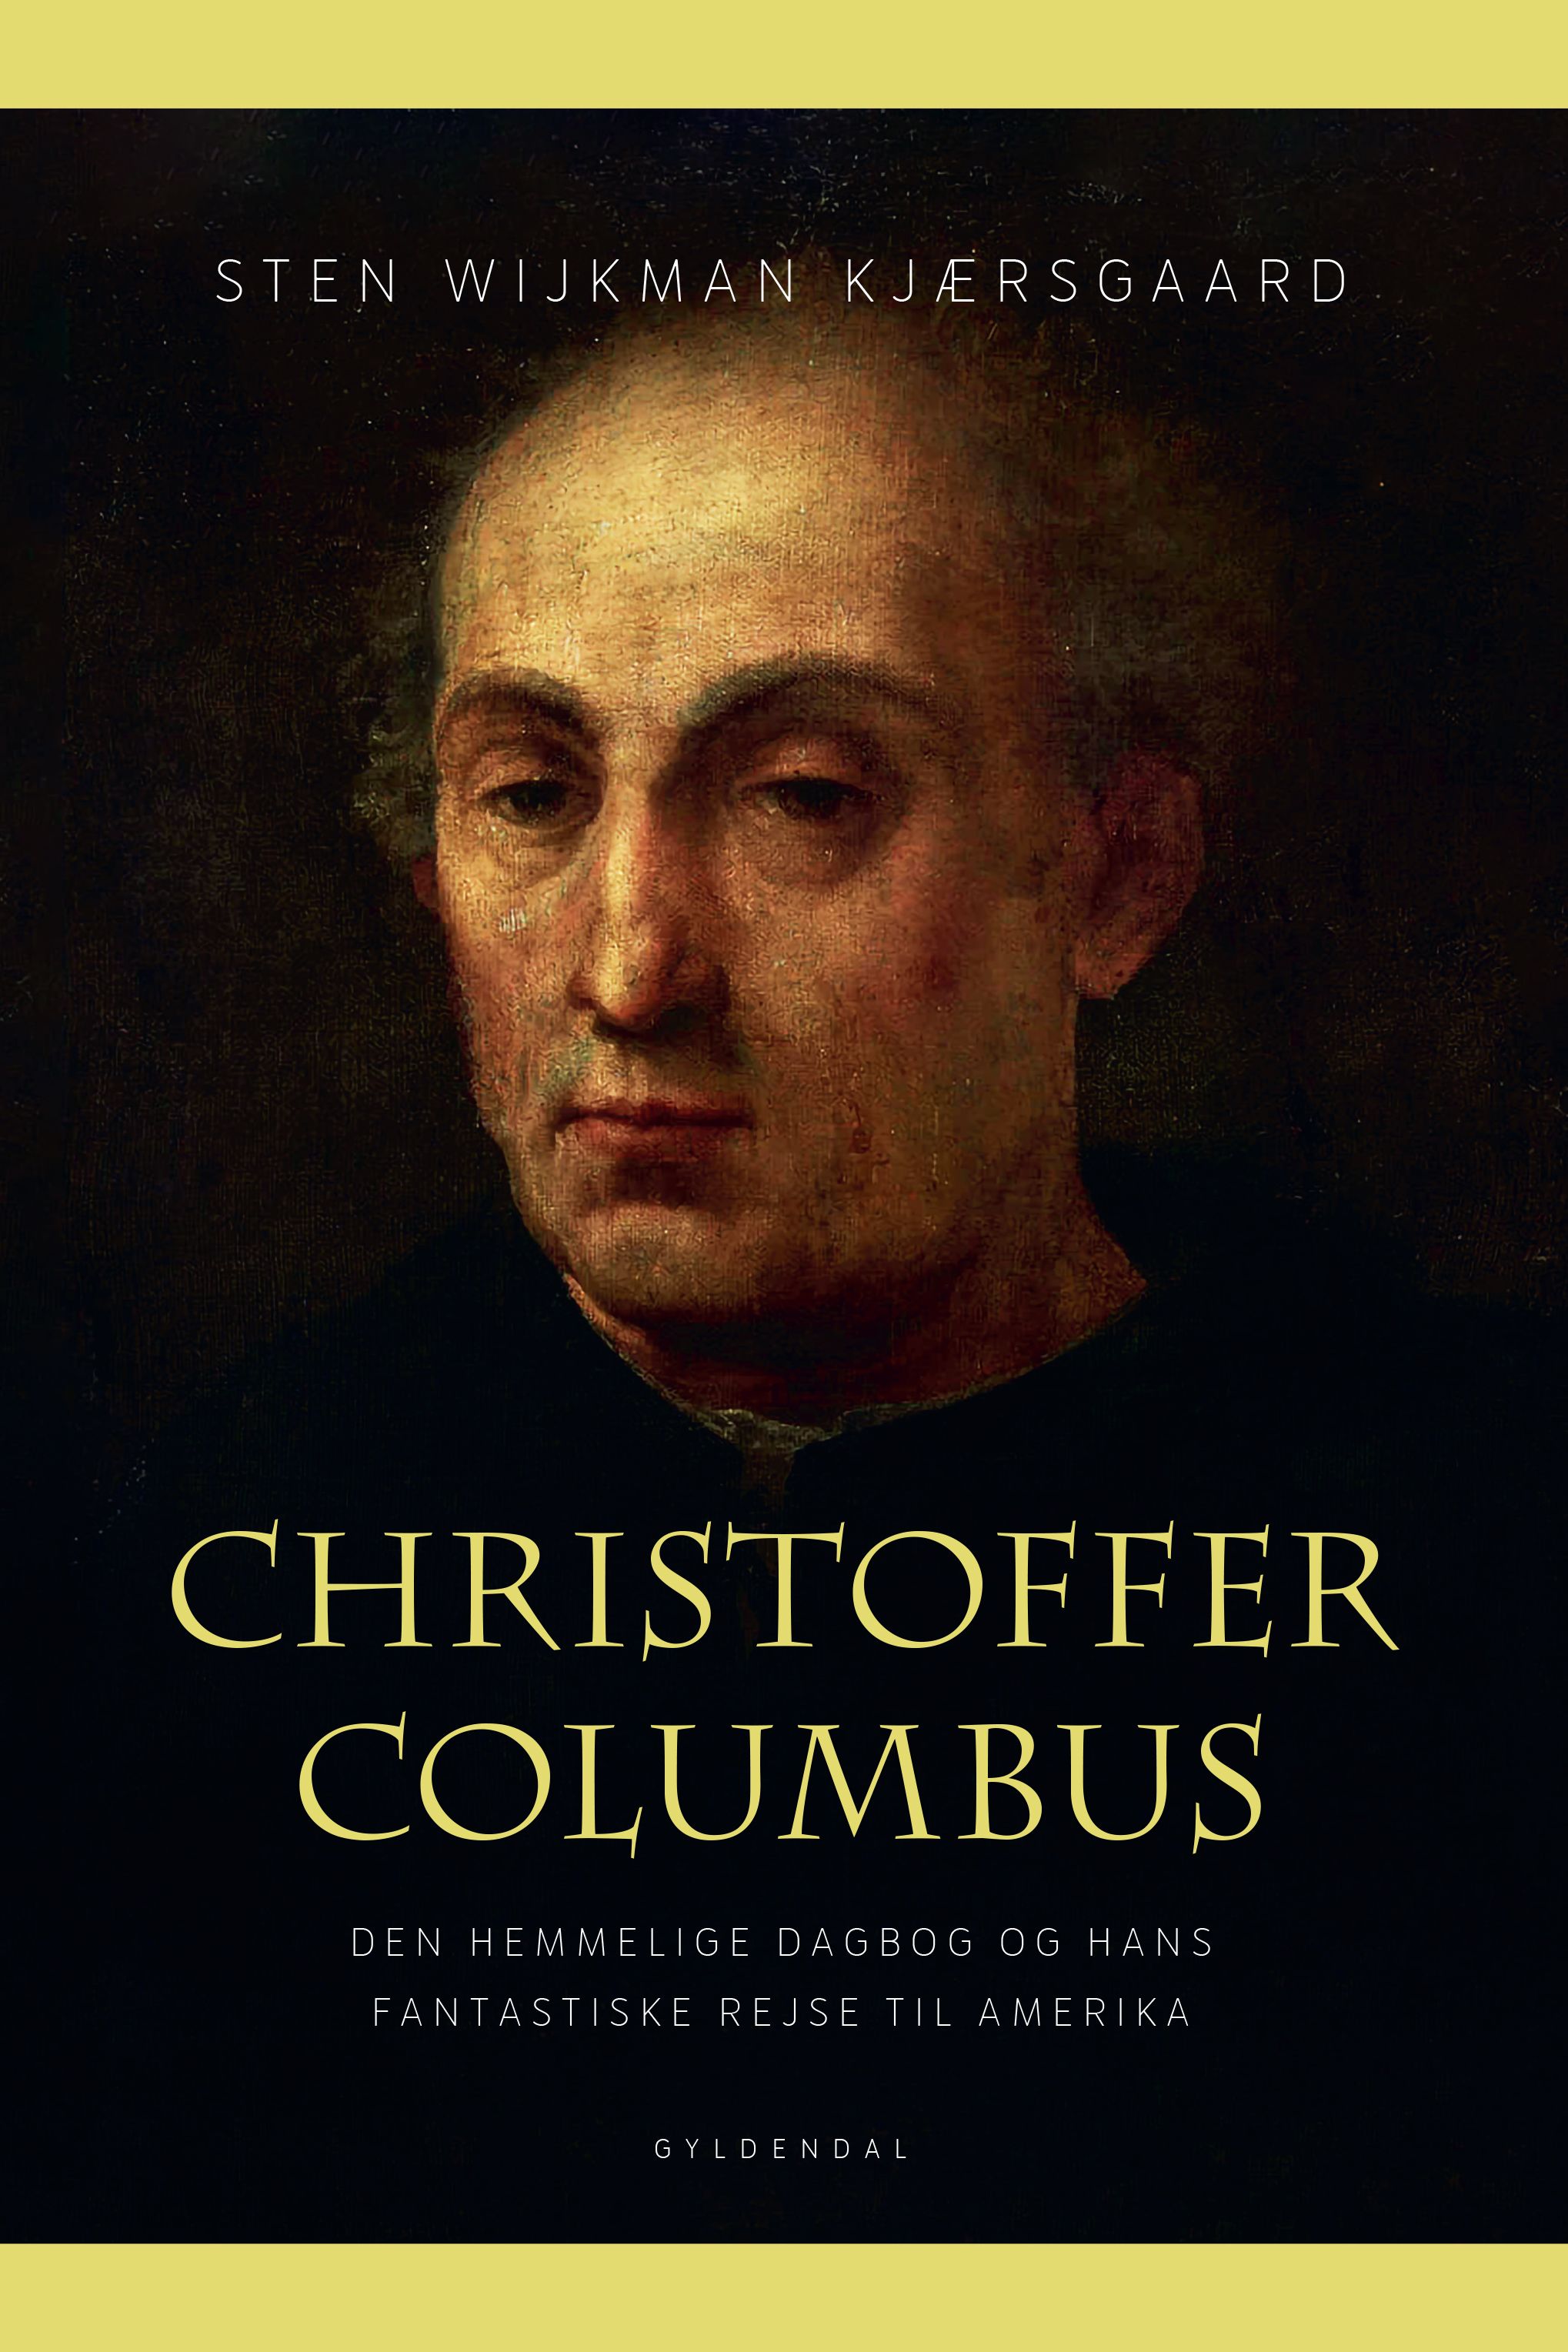 Christoffer Columbus, e-bog af Sten Wijkman Kjærsgaard